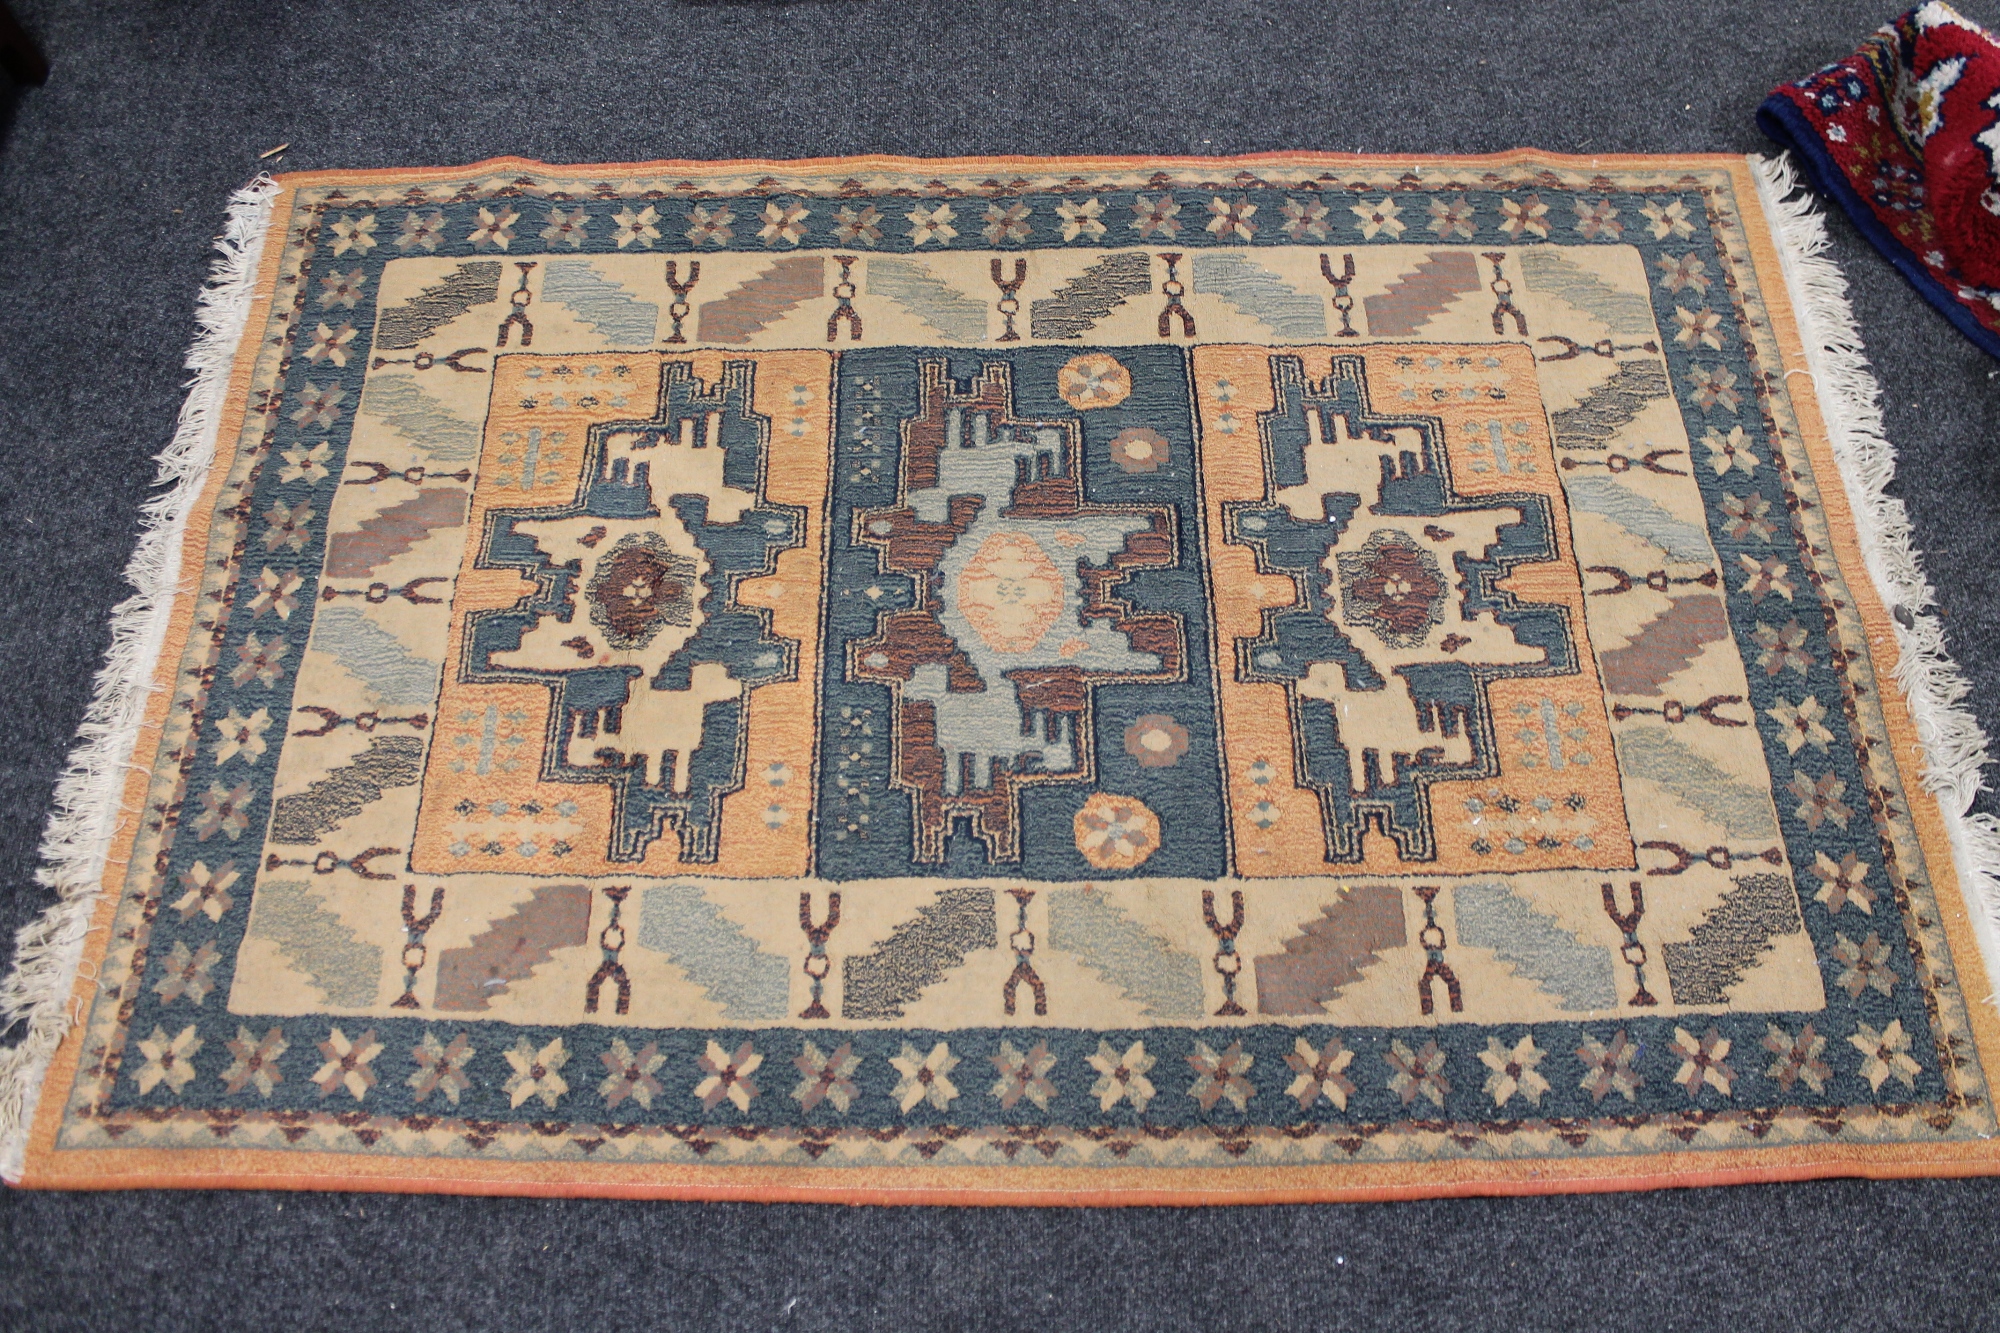 A contemporary rug